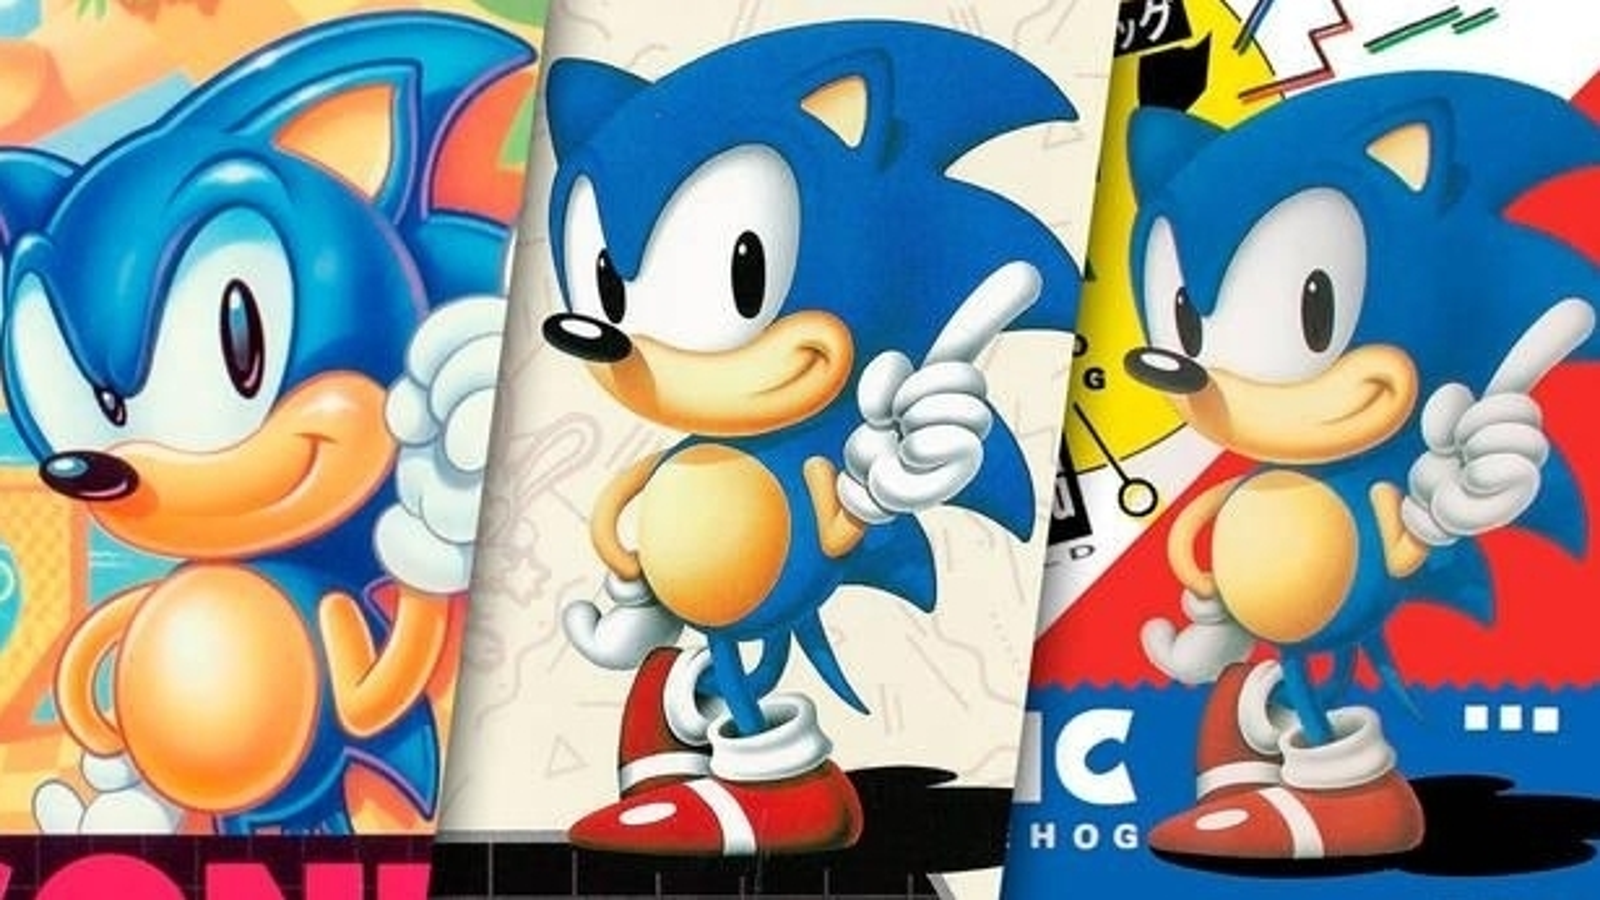 Álbum comemorativo pelos 30 anos de Sonic é disponibilizado nos